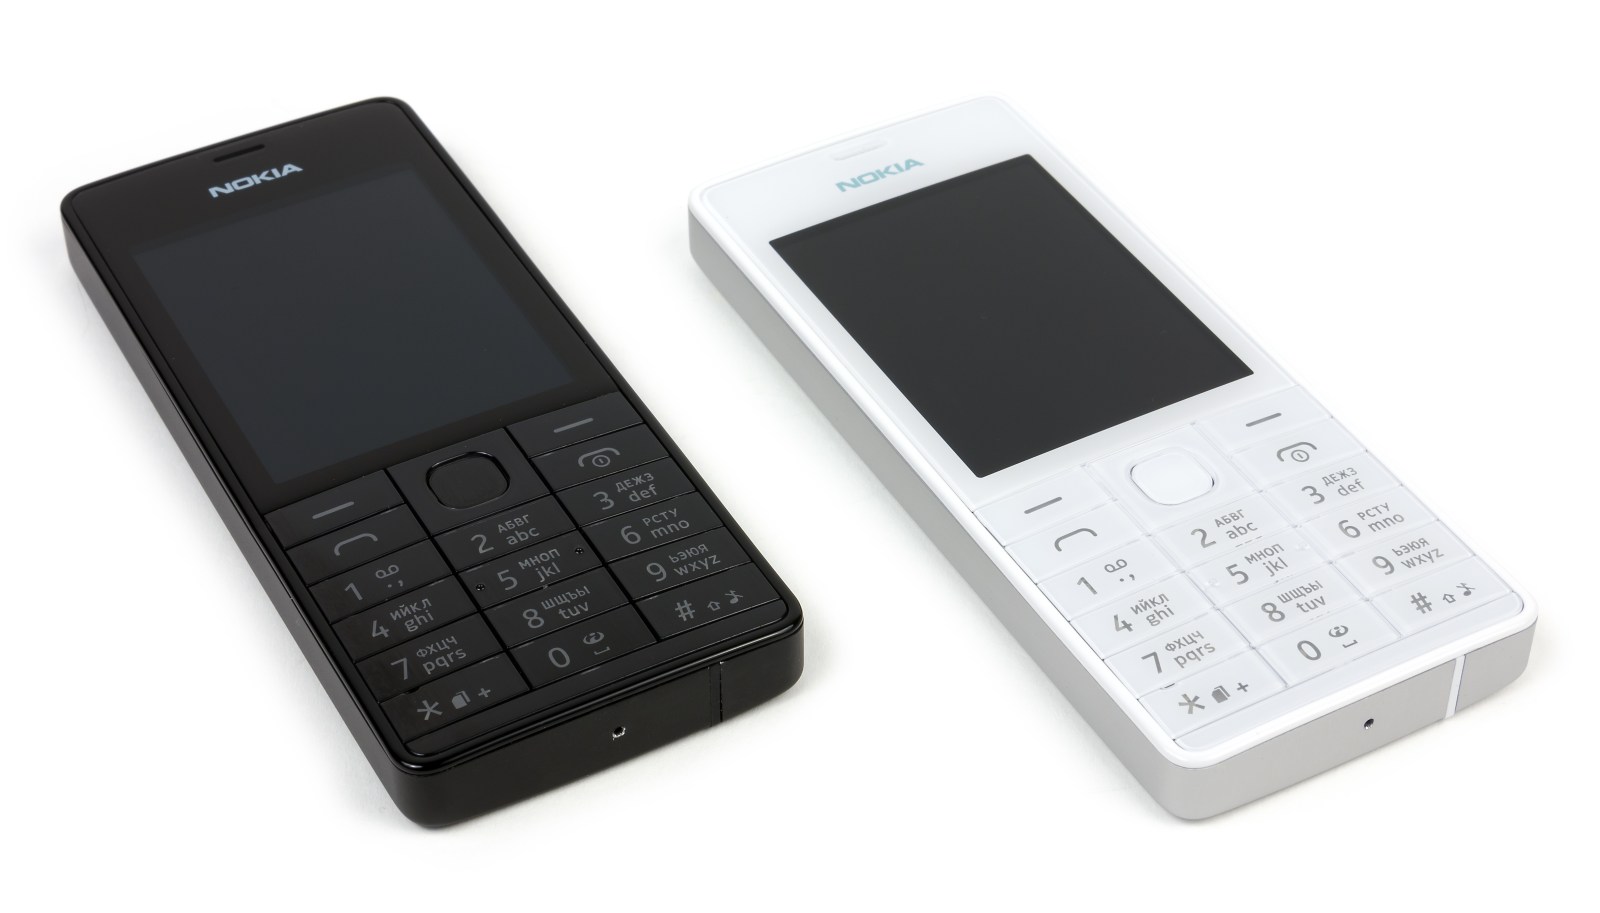 Дизайн телефона Nokia 515